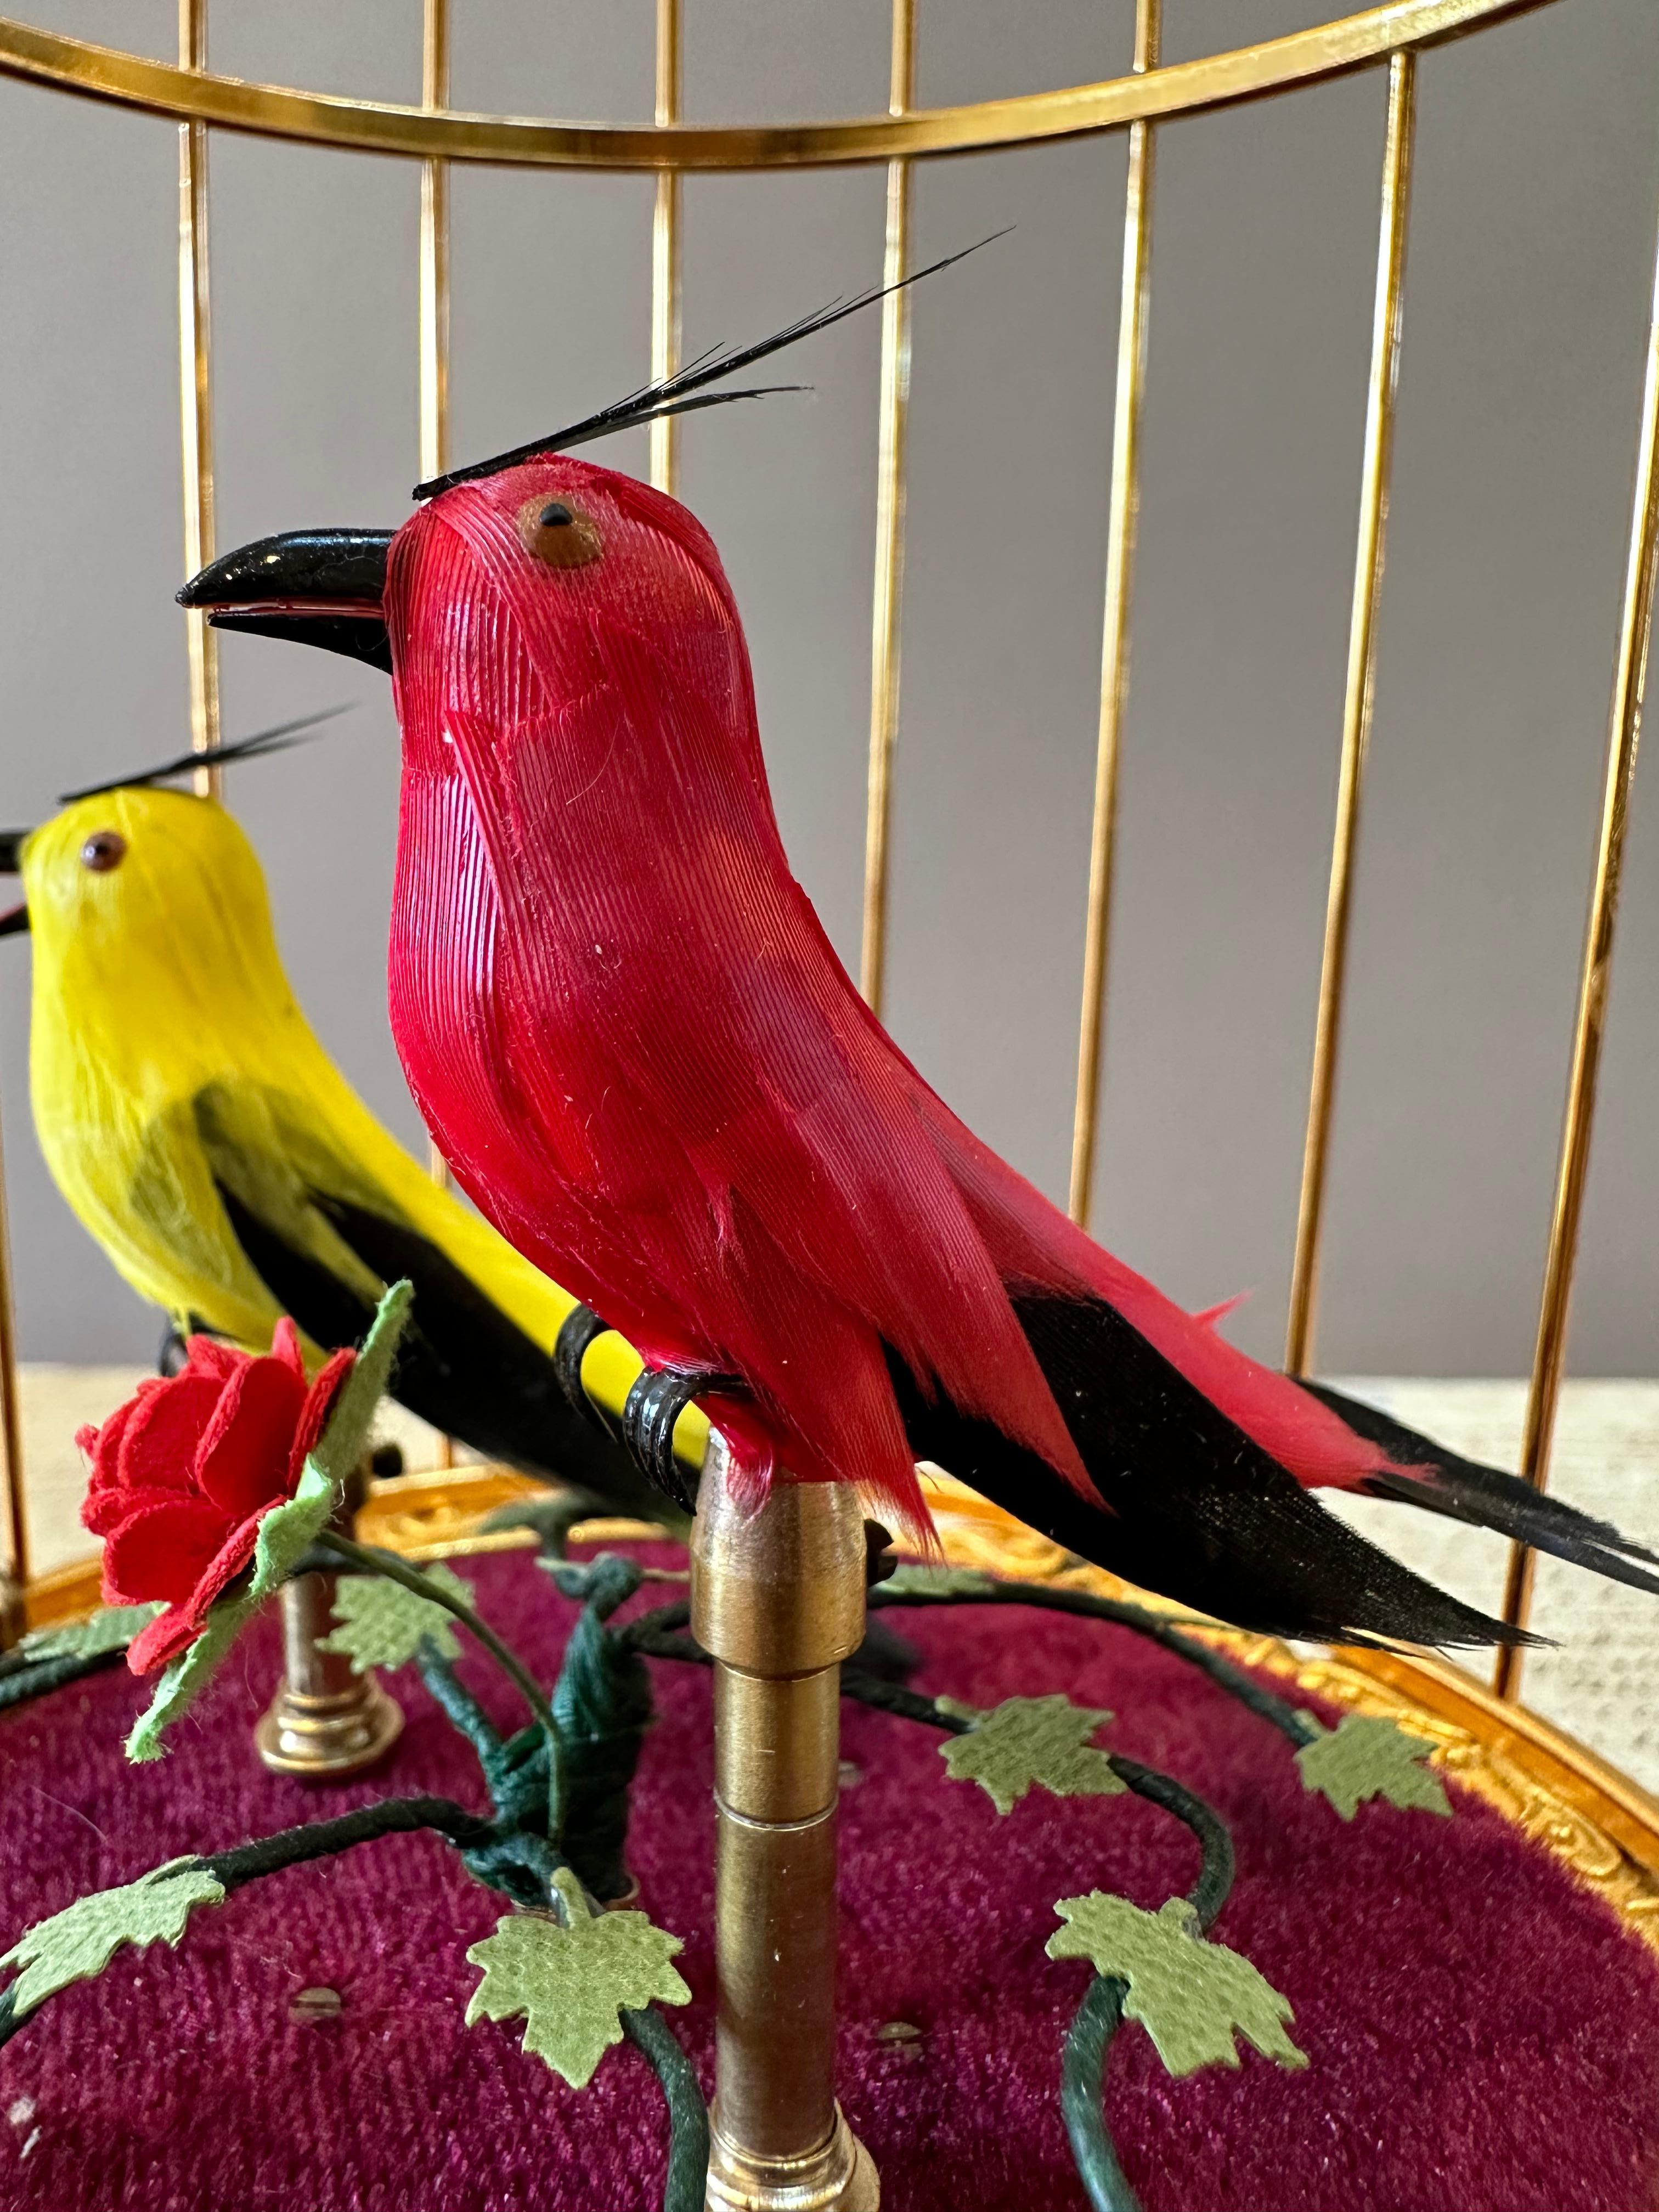 Automate à oiseaux musicaux du début du 20e siècle. Deux oiseaux chanteurs automatisés aux voix puissantes au milieu de feuillages dans une cage en laiton doré de style 